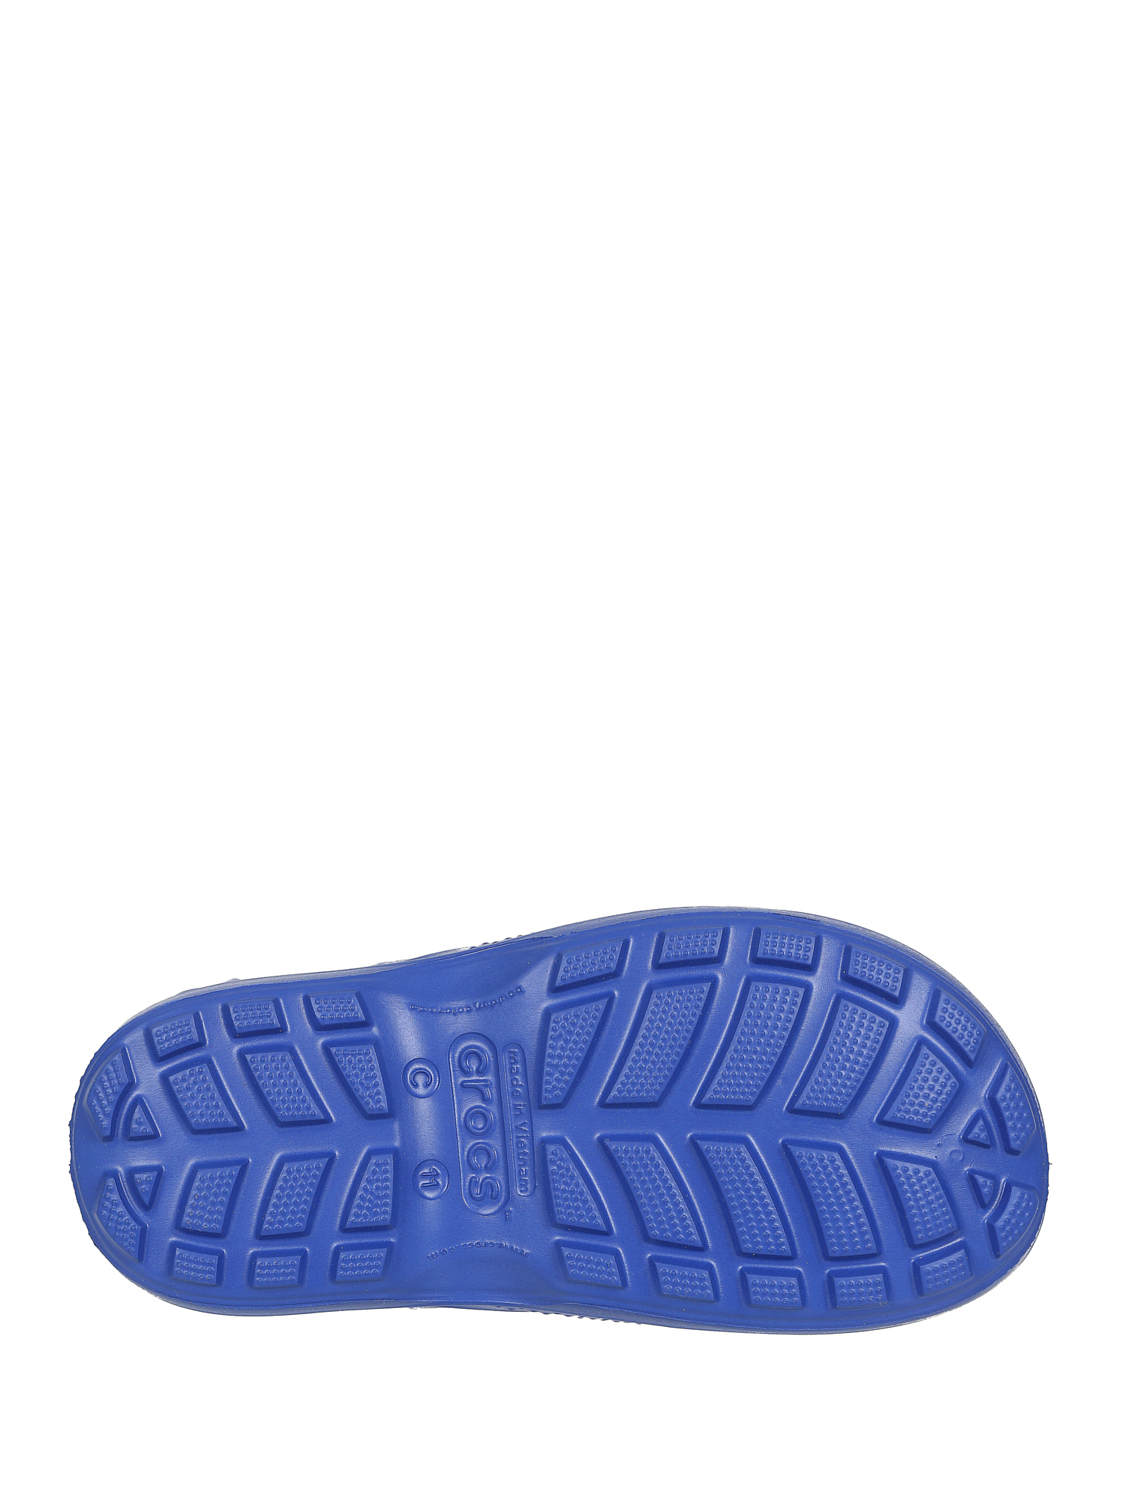 Сапоги резиновые Crocs Rain Boot K Cerulean Blue